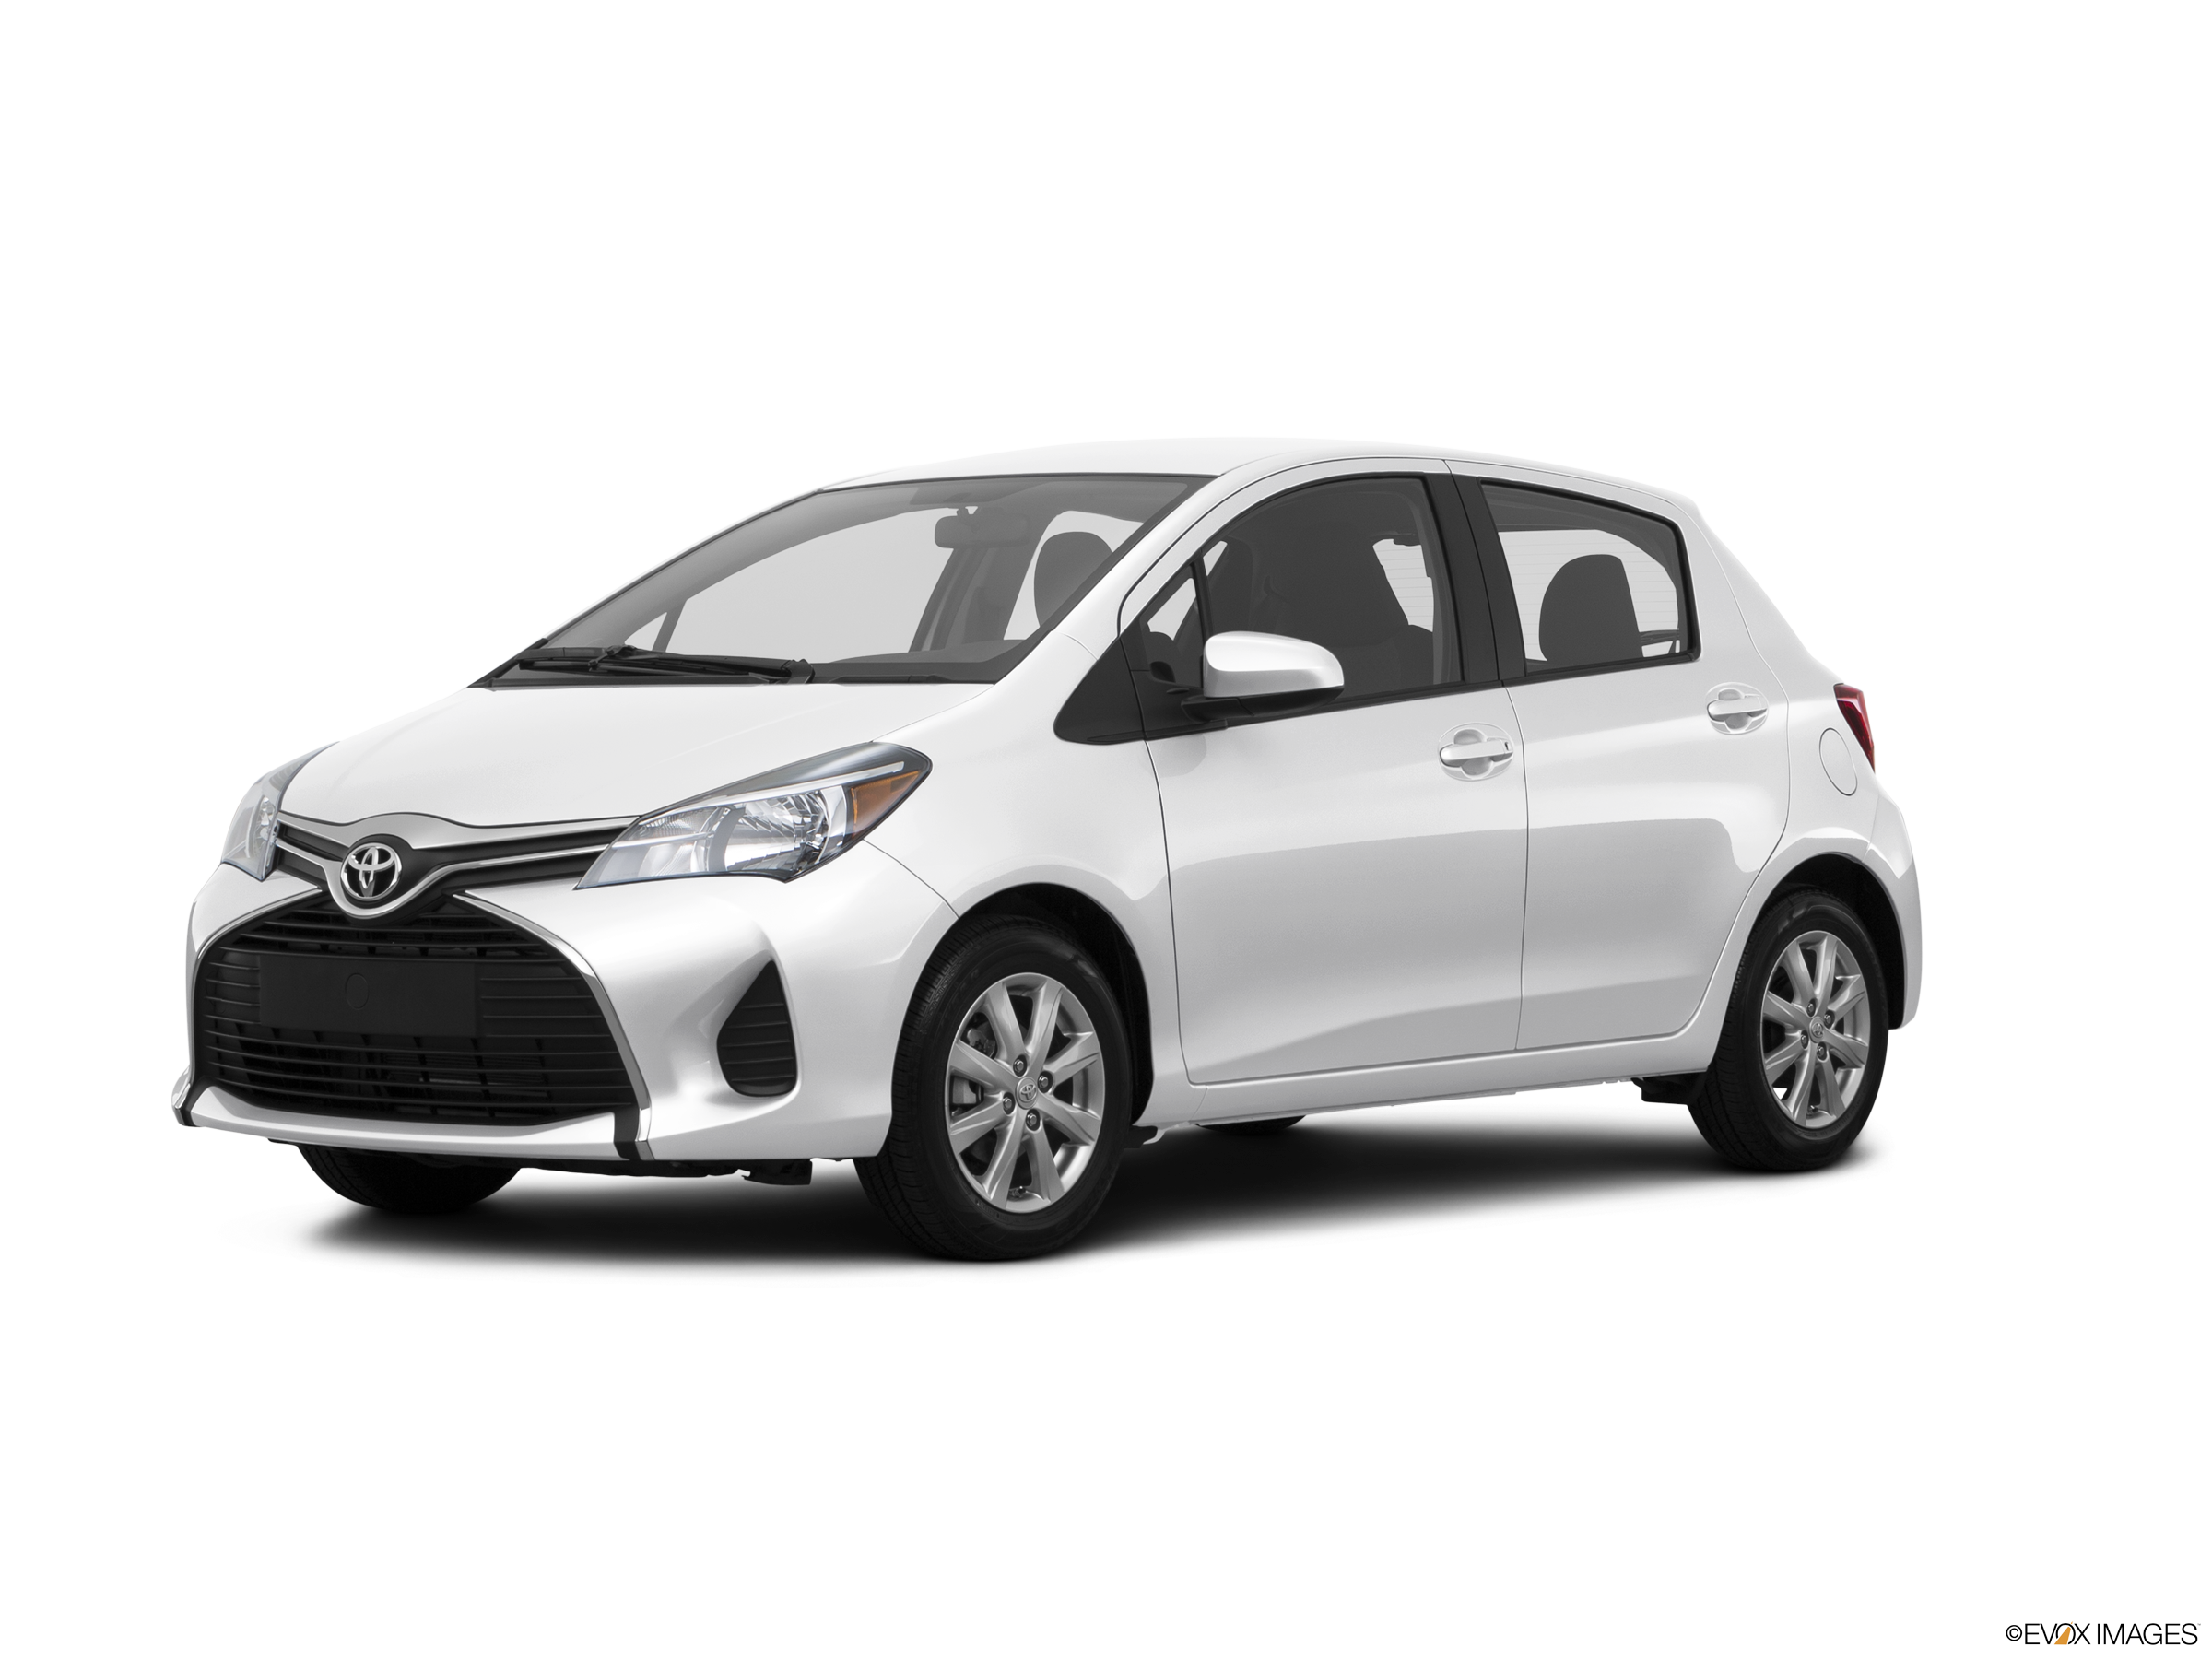 Toyota Yaris mới chính thức được ra mắt ở Mỹ